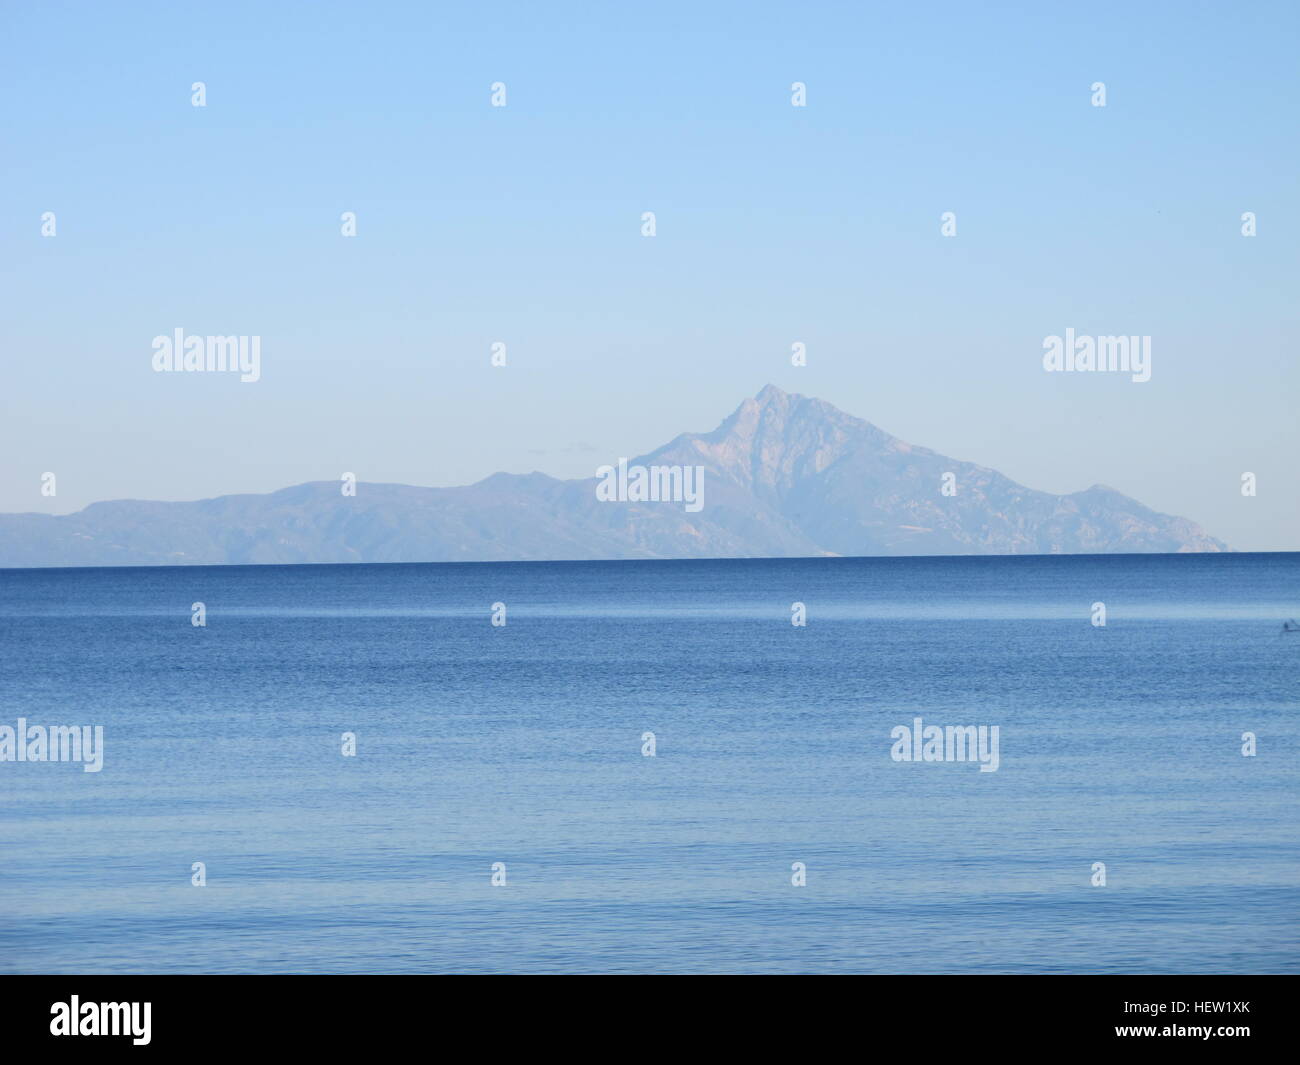 Greece central Macedonia Chalkidiki Khalkidhiki Aegean Sea Mount Athos Holy Mountain Stock Photo